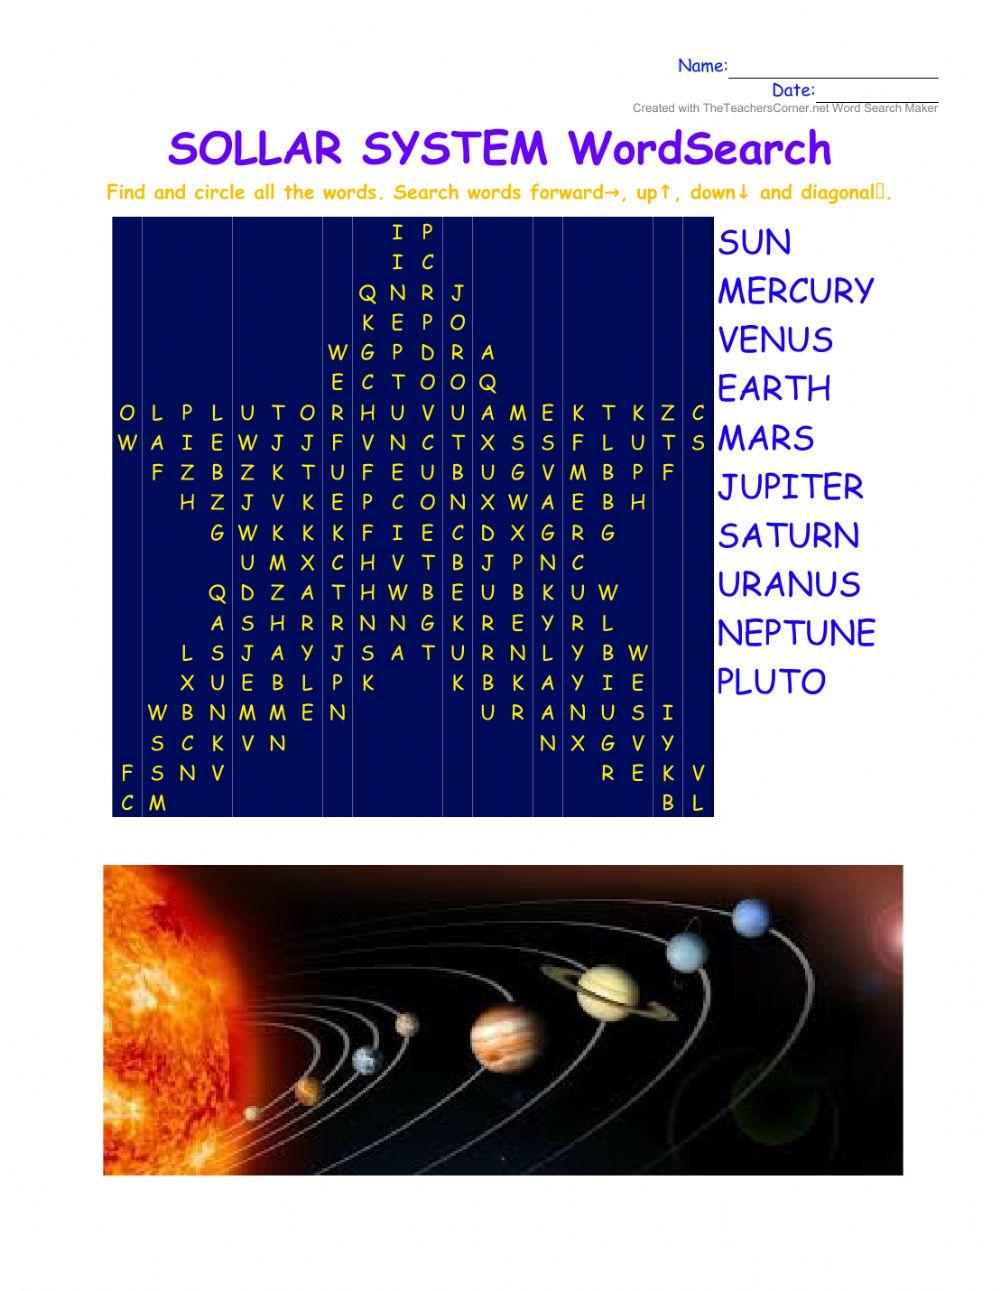 SOLAR SYSTEM WordSearch